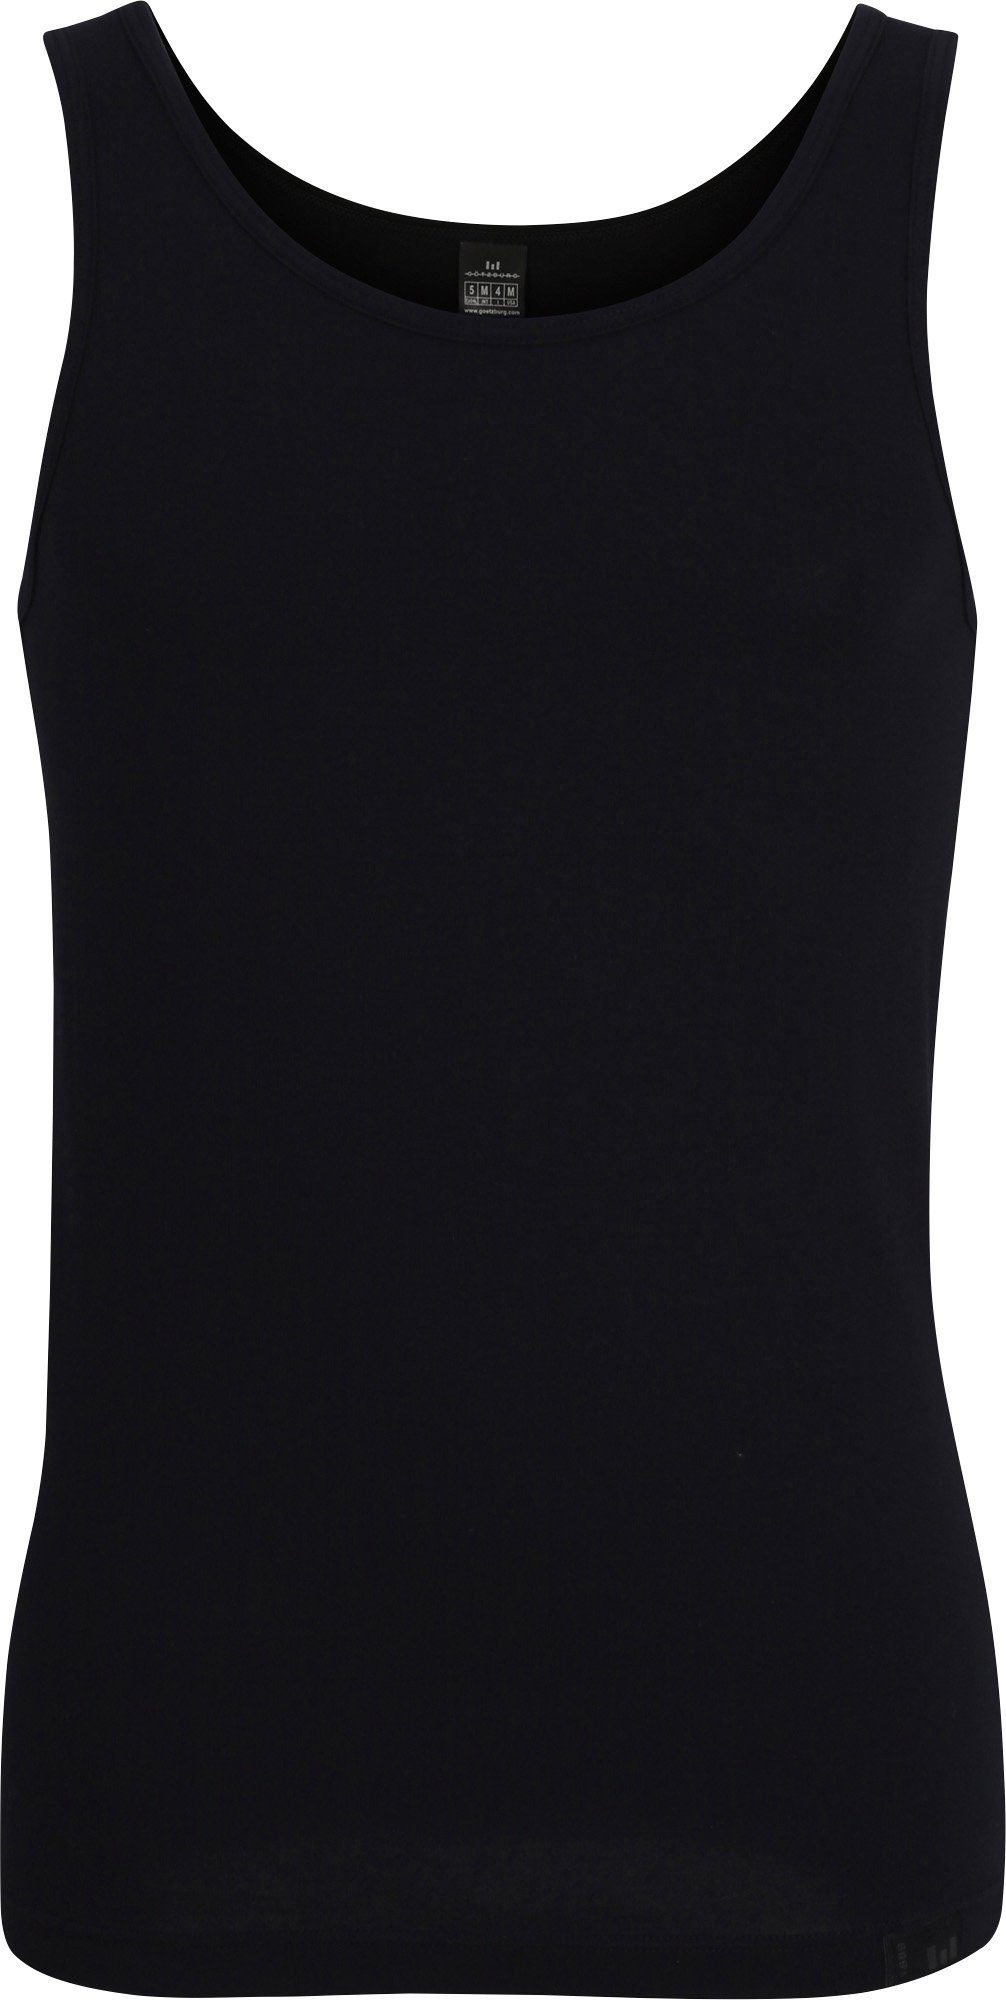 GÖTZBURG Unterhemd Herren-Unterhemd Single-Jersey Uni schwarz